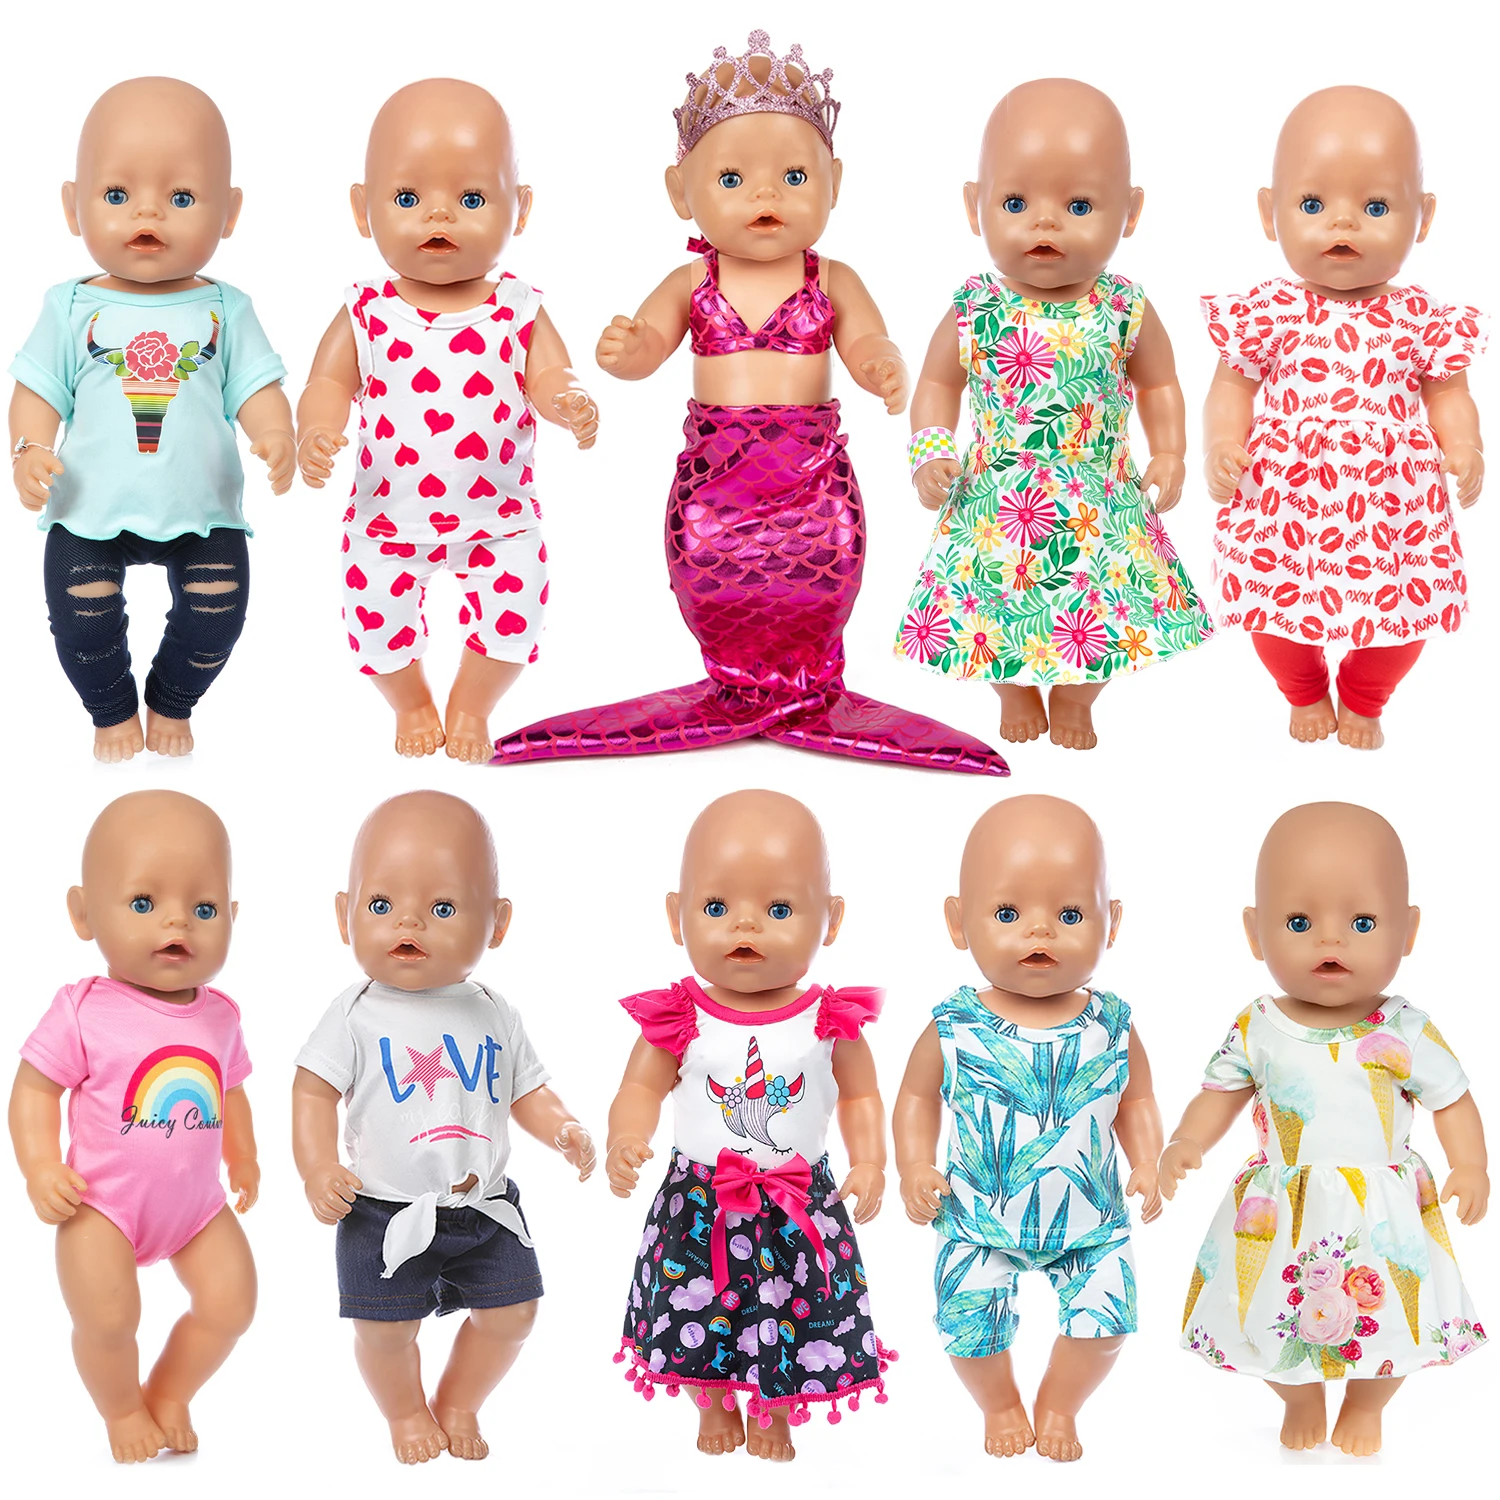 Модный костюм, подходящий для одежды новорожденной куклы Baby Doll 43 см